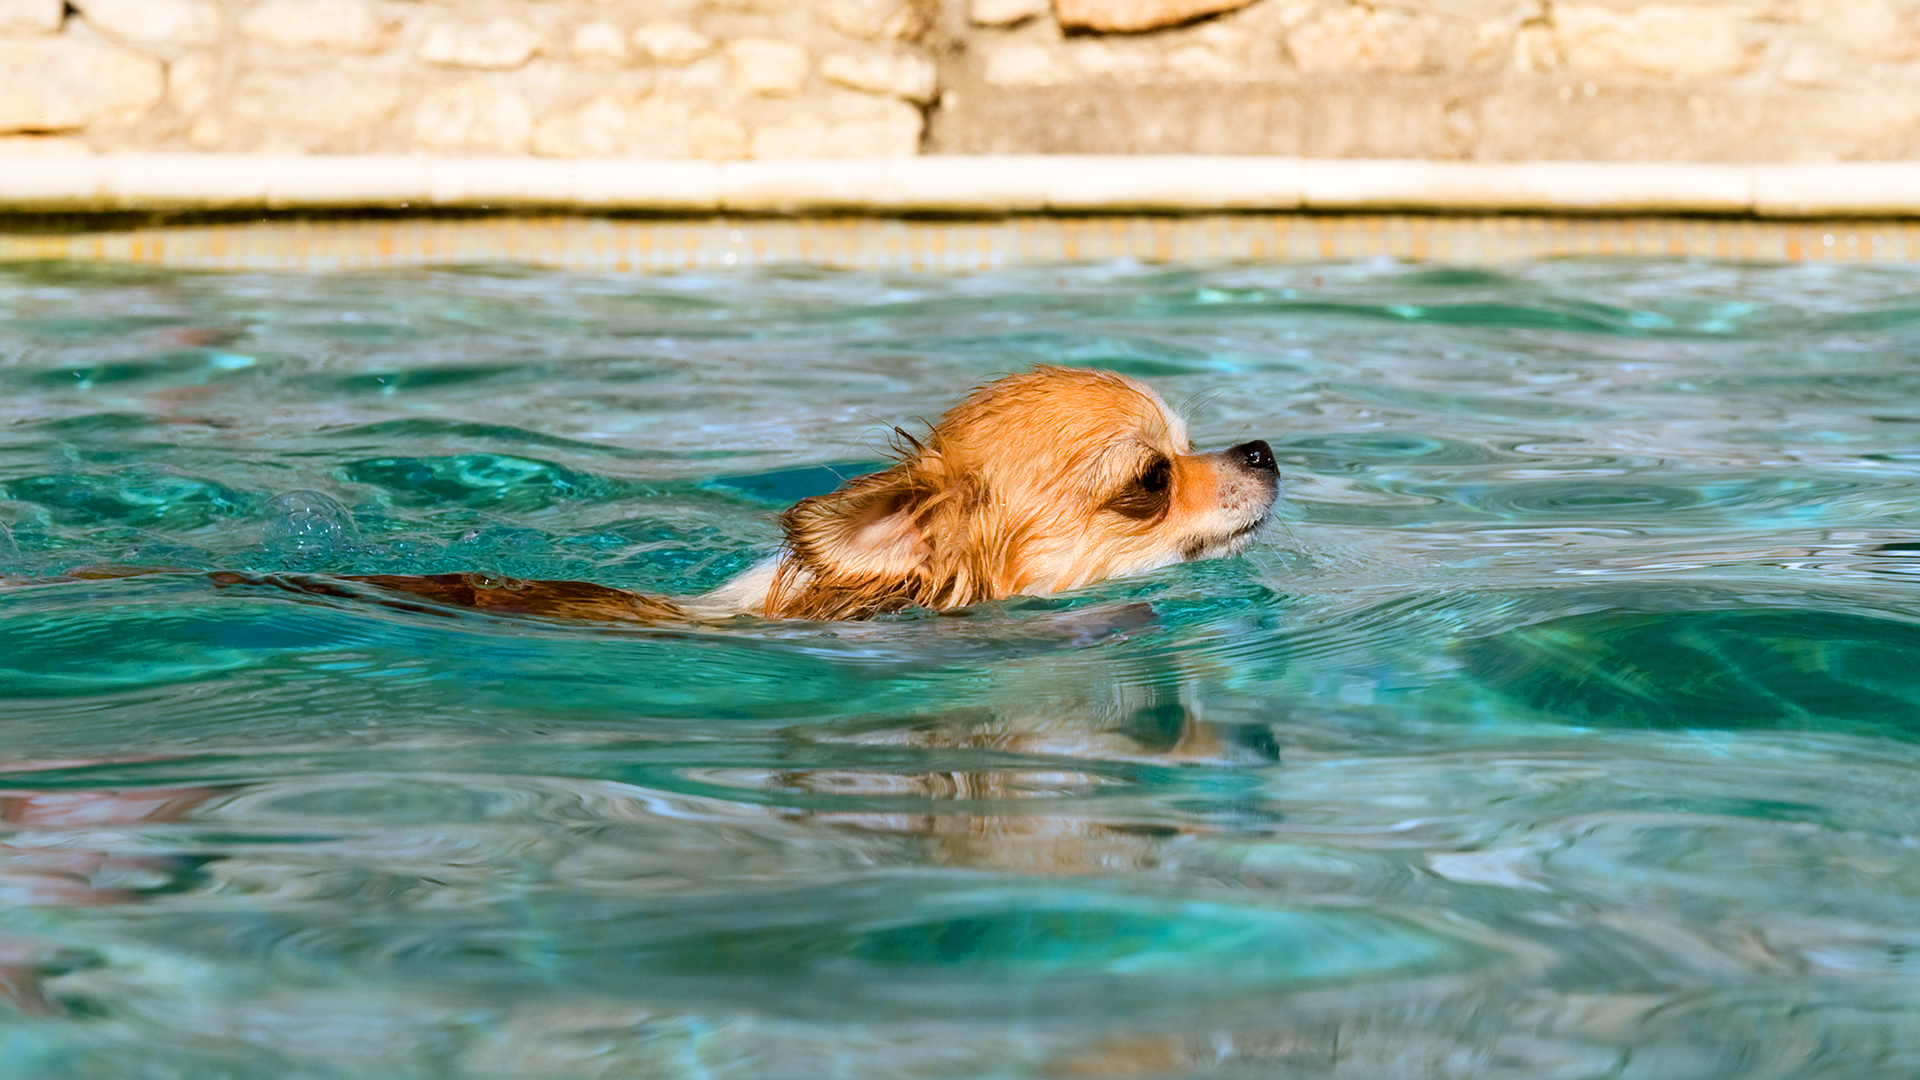 Hidroterapia traz muitos benefícios no tratamento e condicionamento dos cães